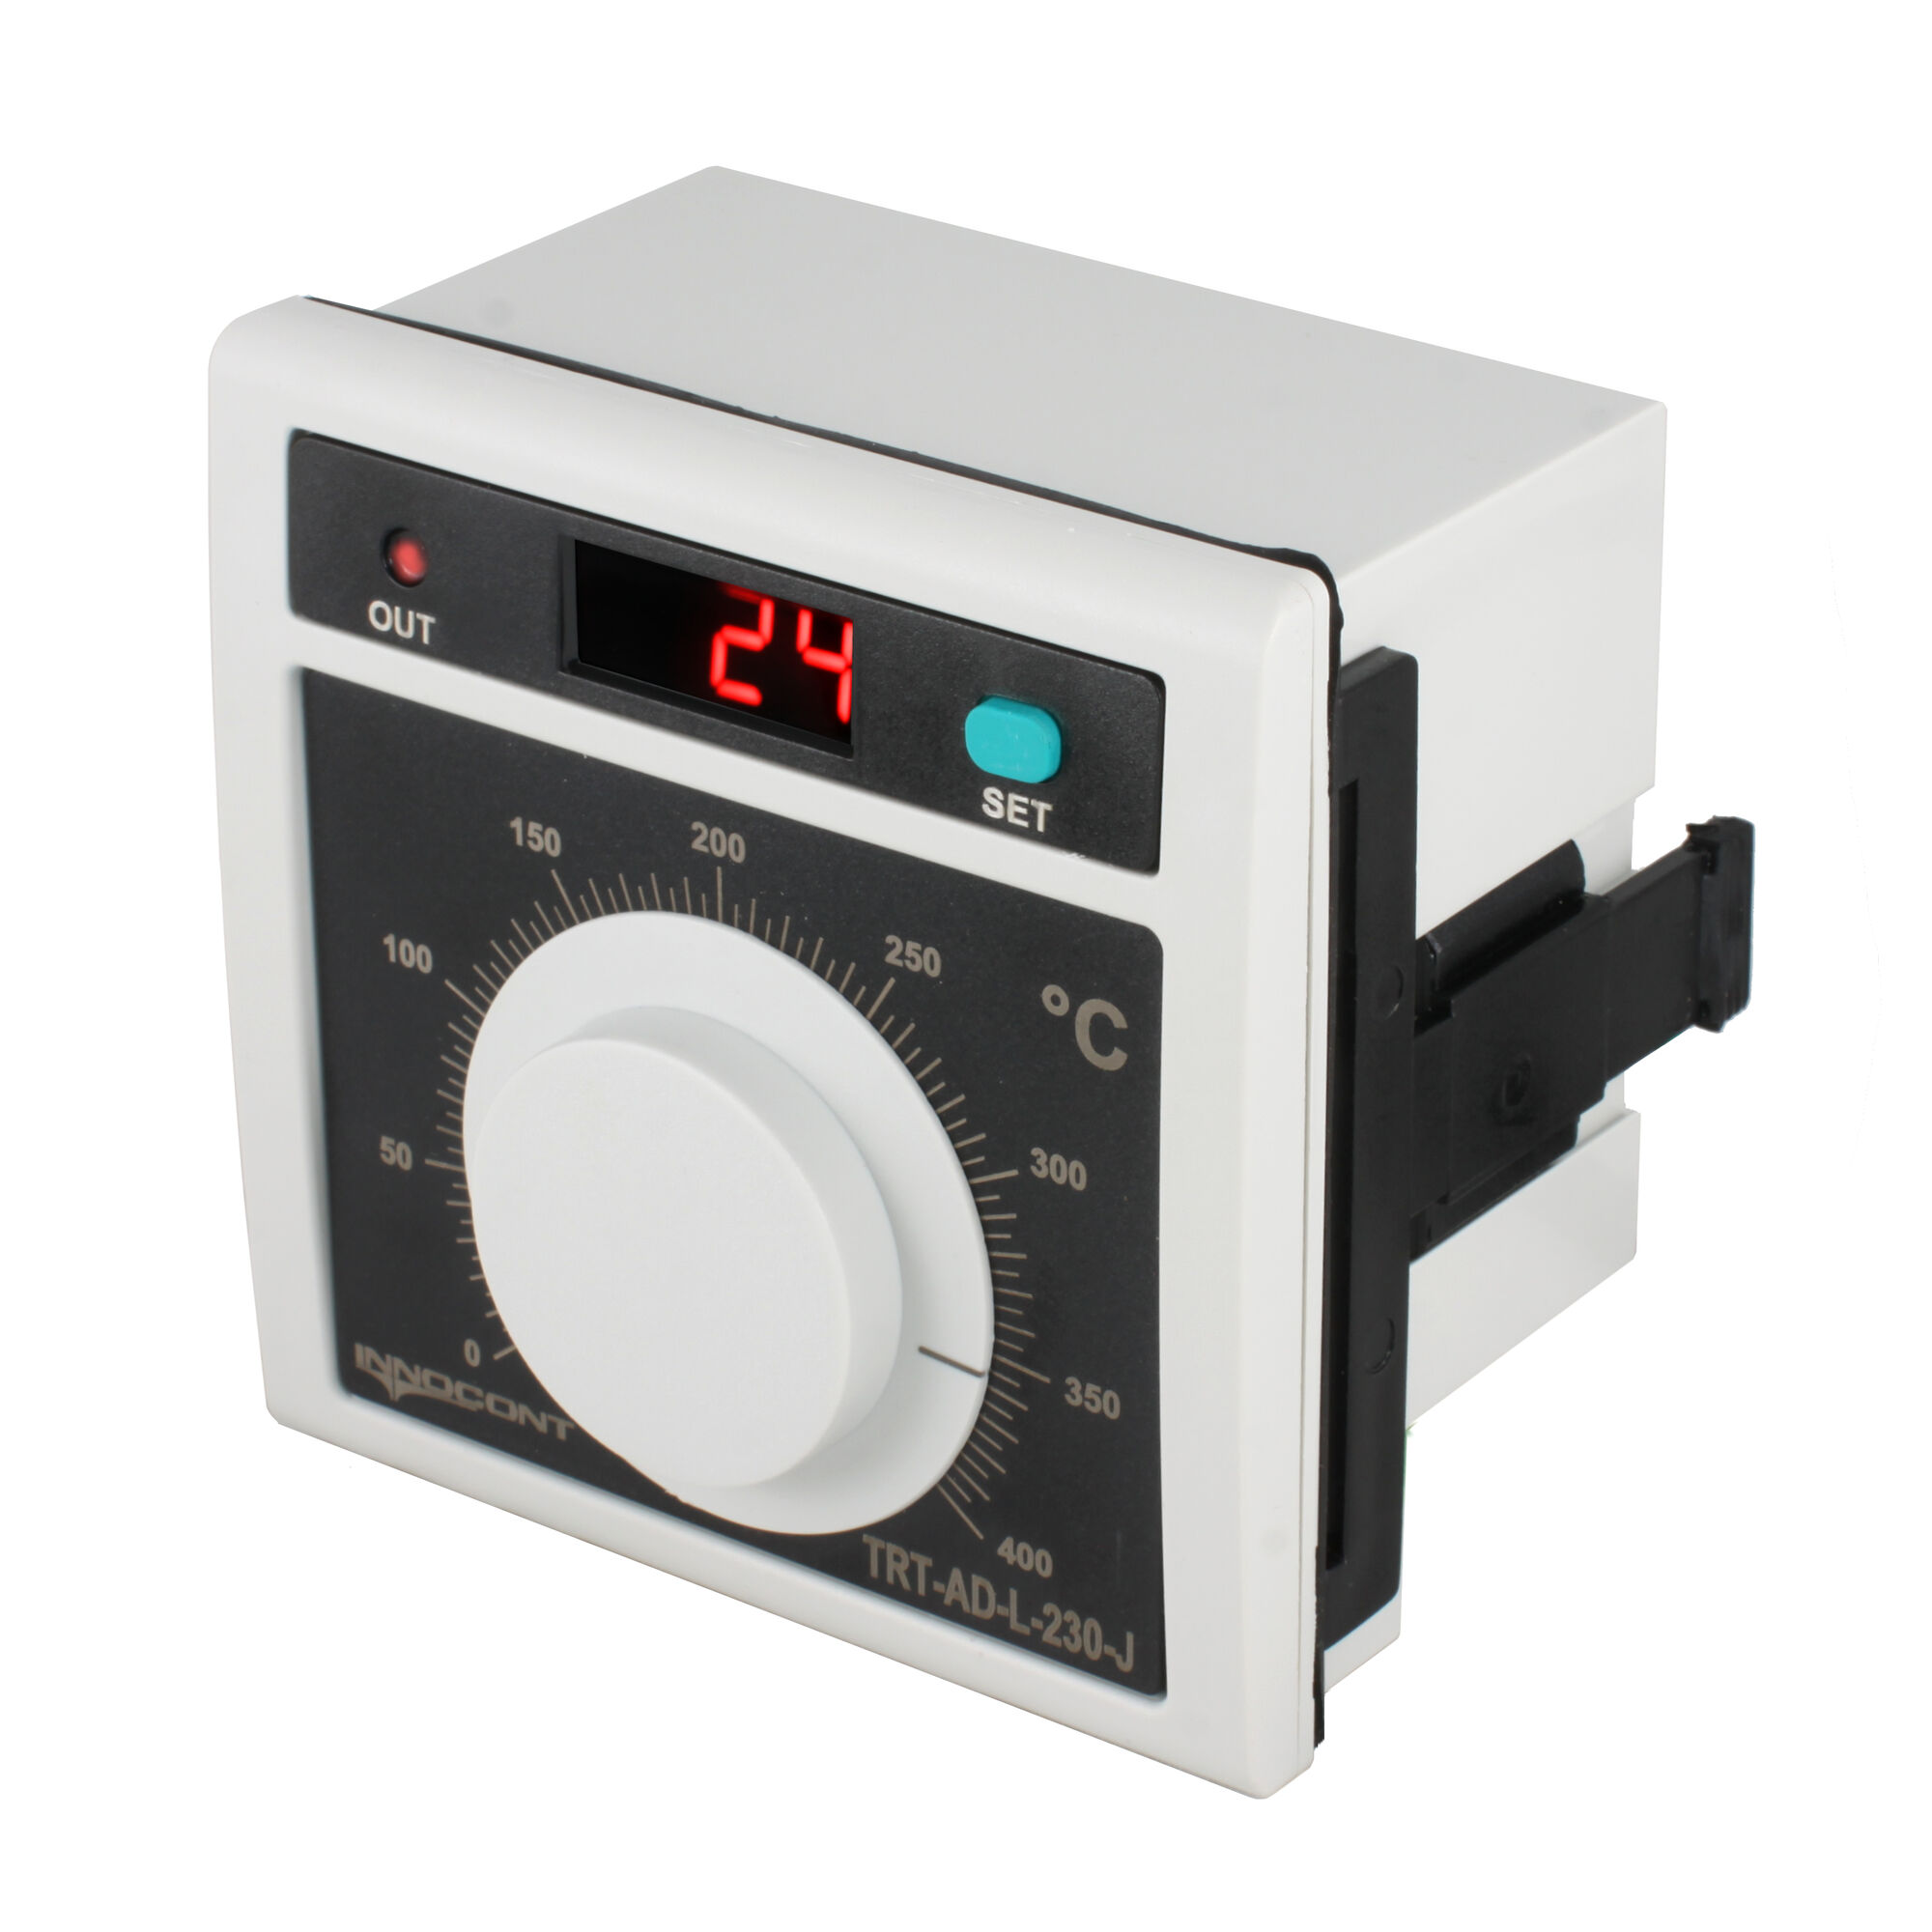 Температурный контроллер TRT-AD-L-230-J